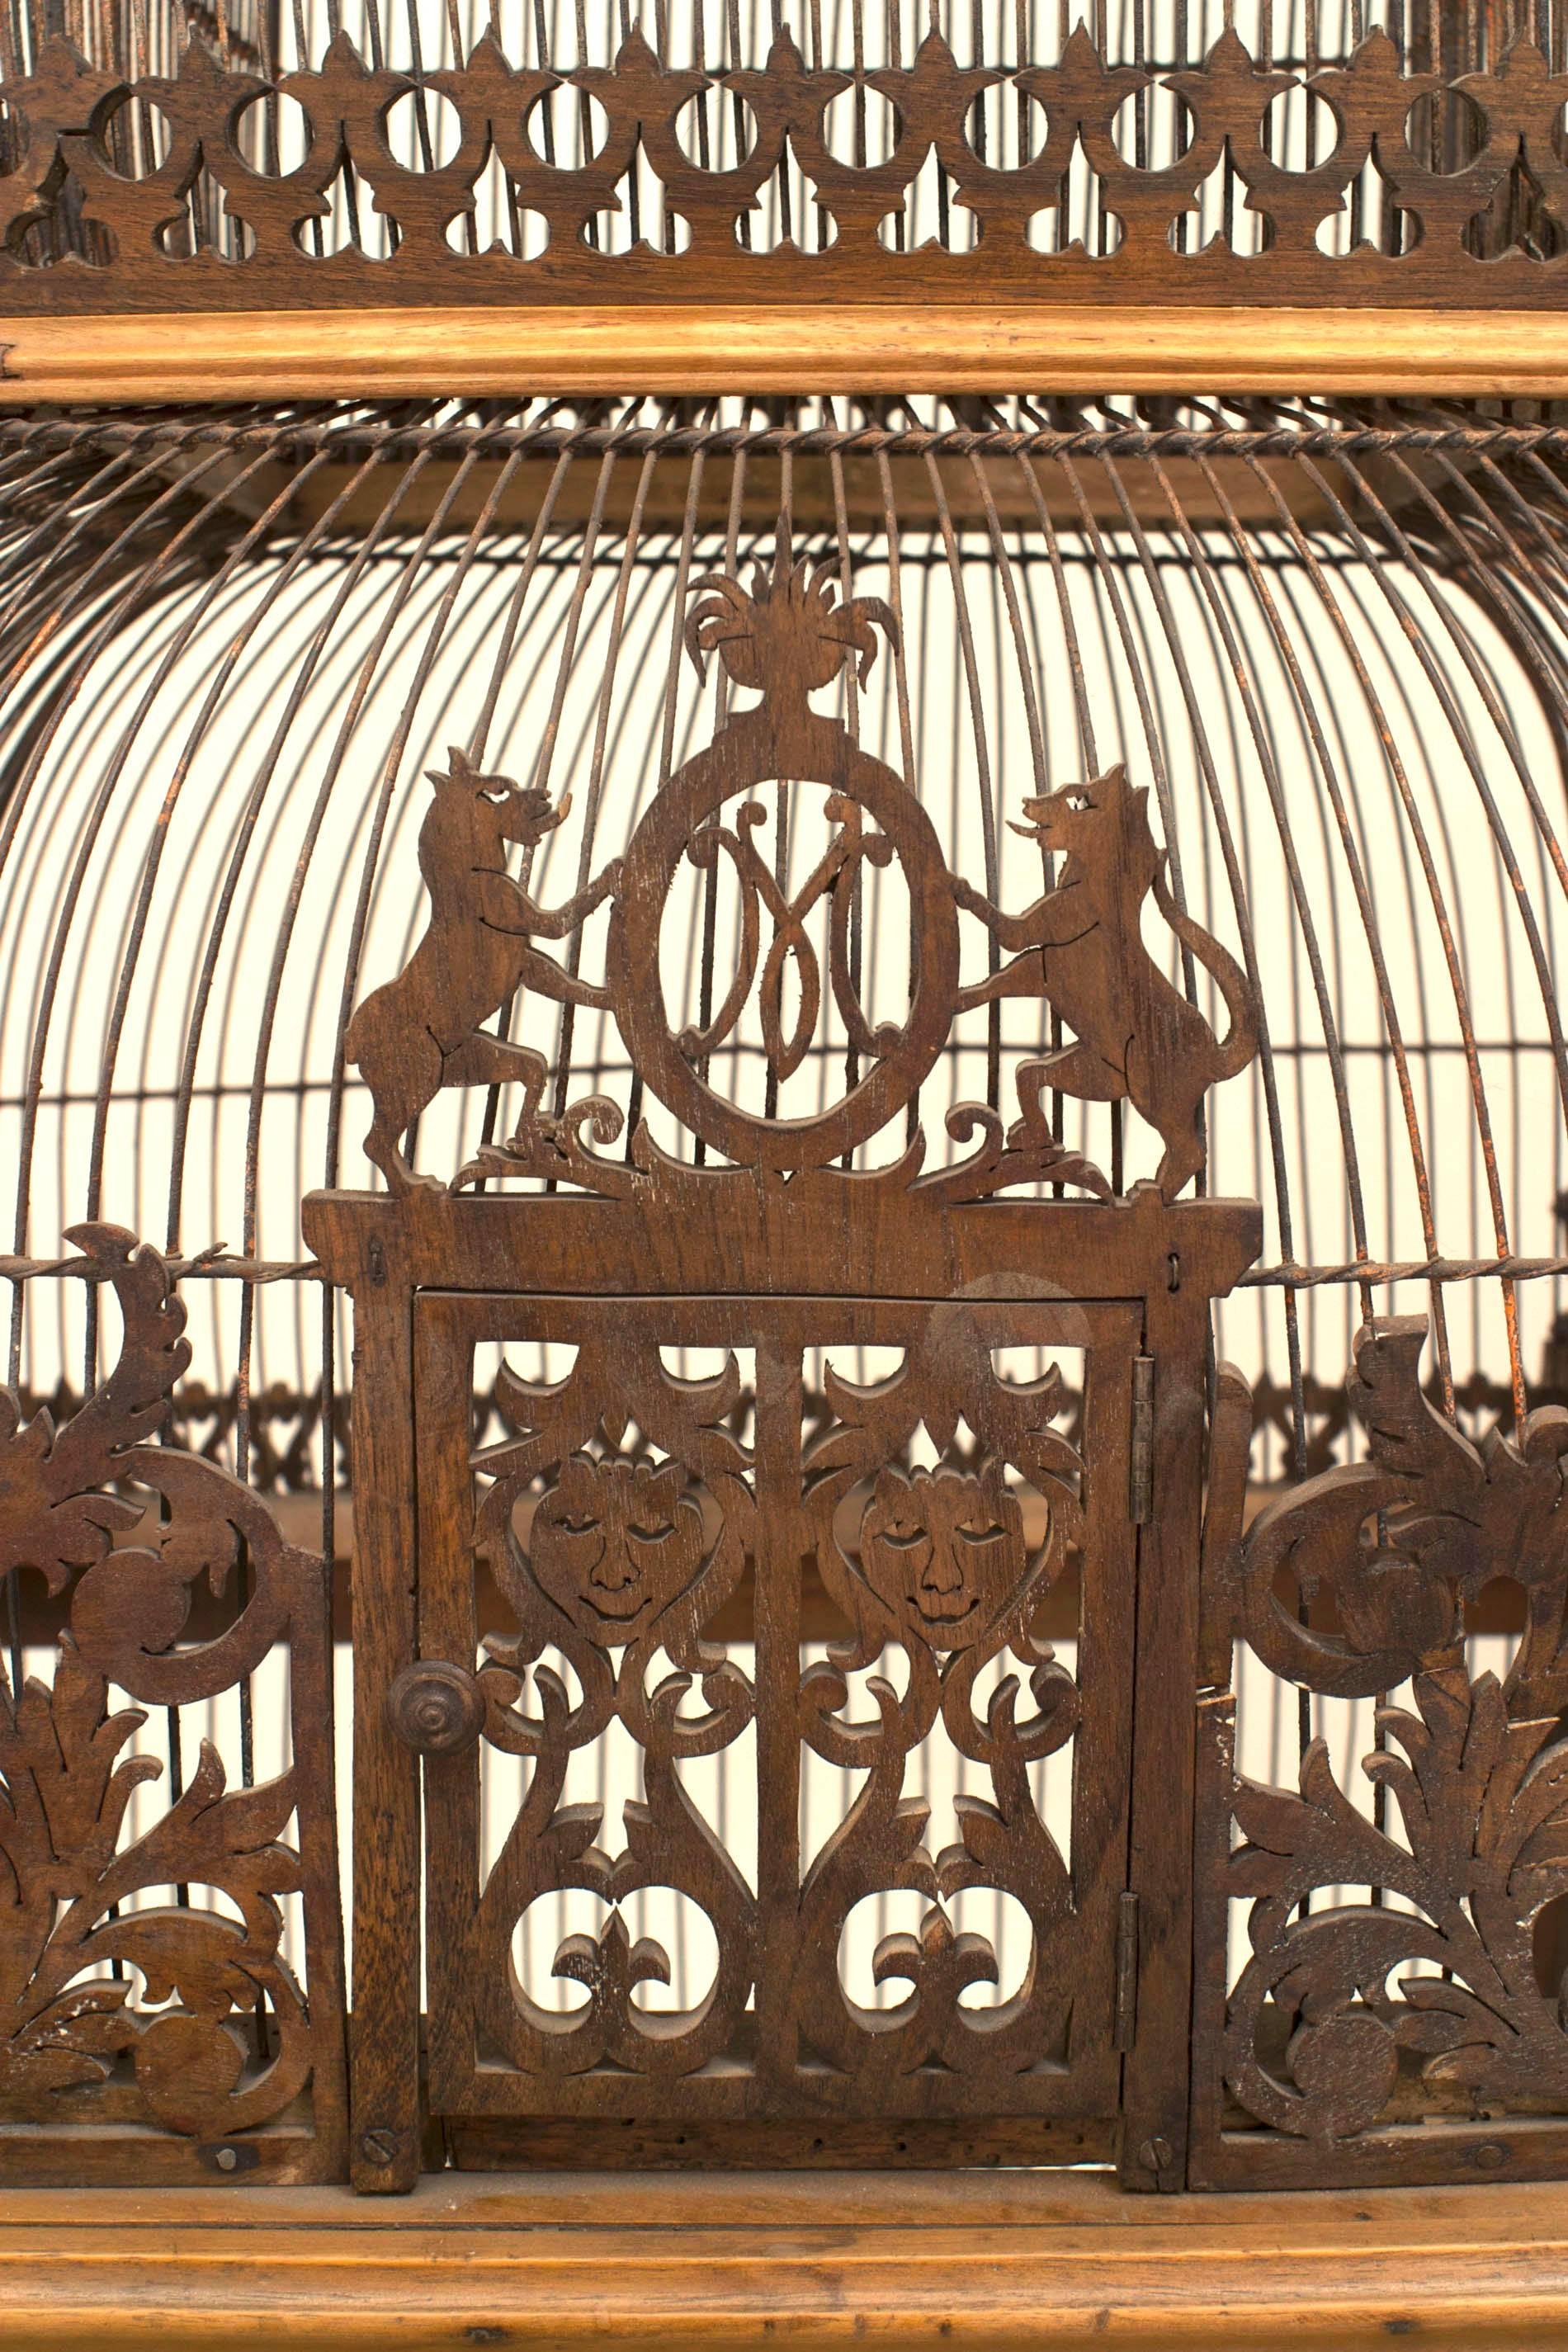 antique bird cages